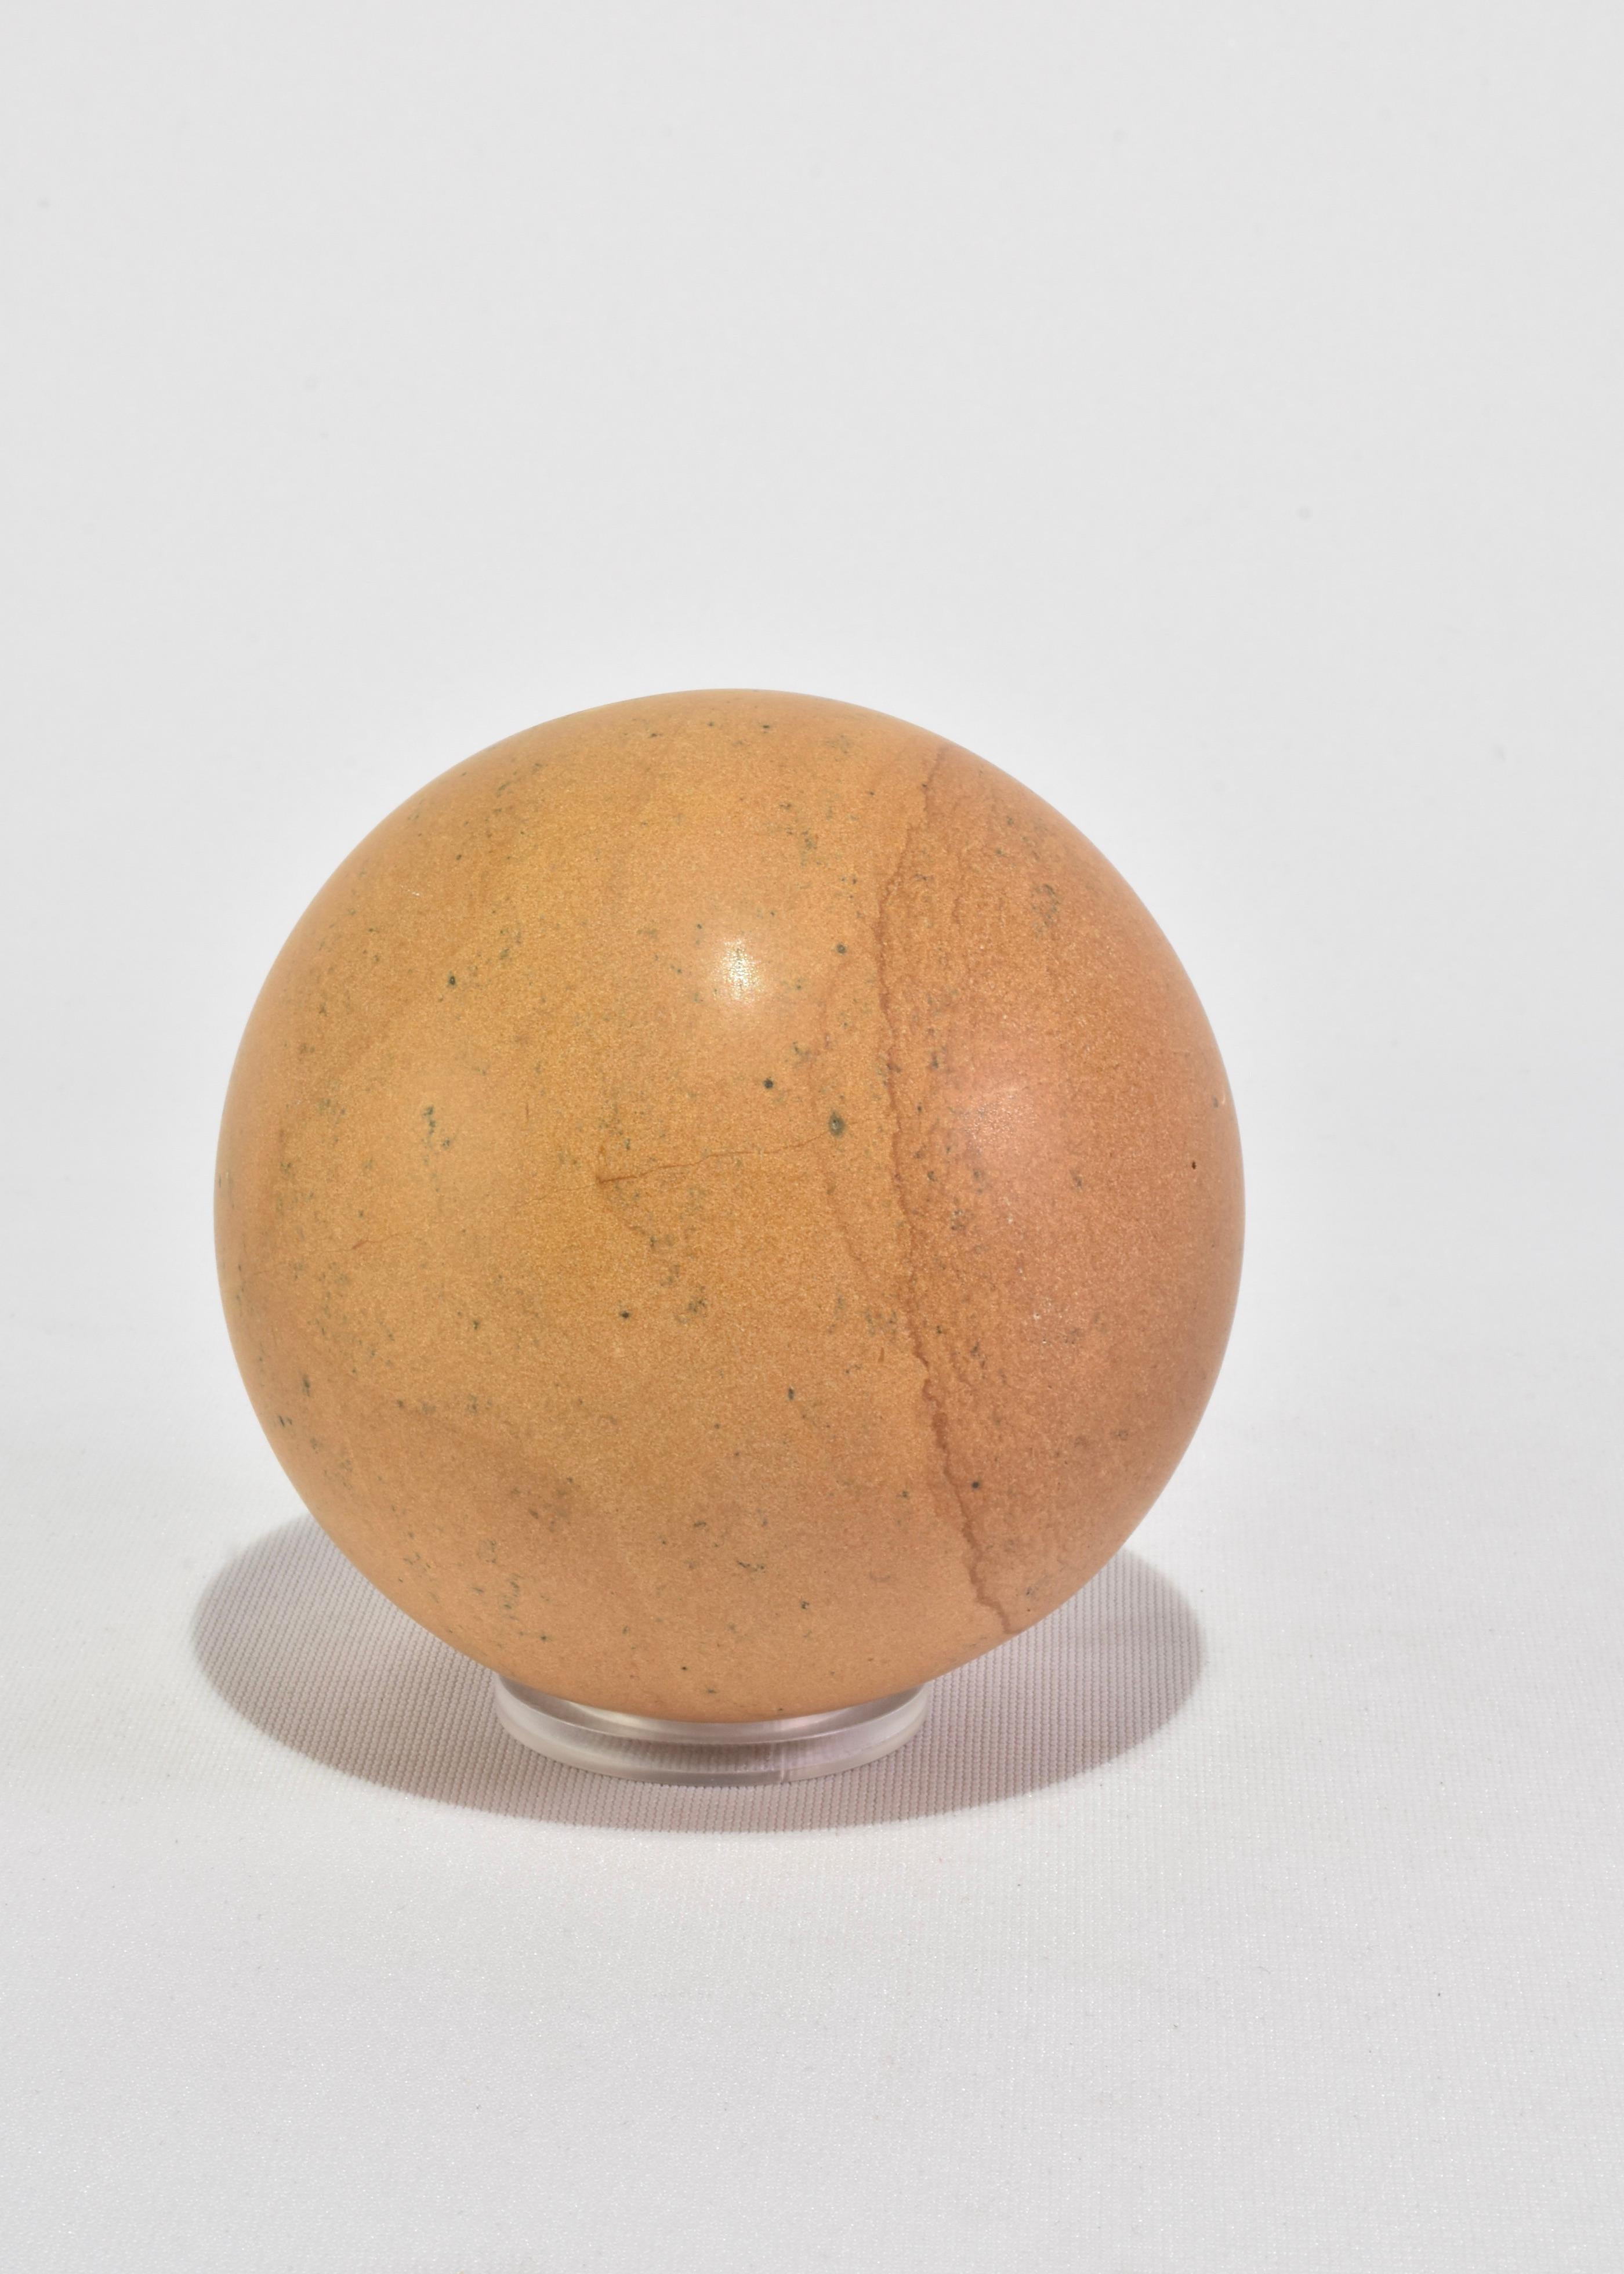 Die Buchstütze Sphere ist das neueste Design aus unserer hauseigenen Kollektion. Stellen Sie ihn als Skulptur aus, verwenden Sie ihn als schicken Türstopper, oder einfach als Buchstütze. Handgefertigt aus gelbem Sandstein von Kunsthandwerkern in